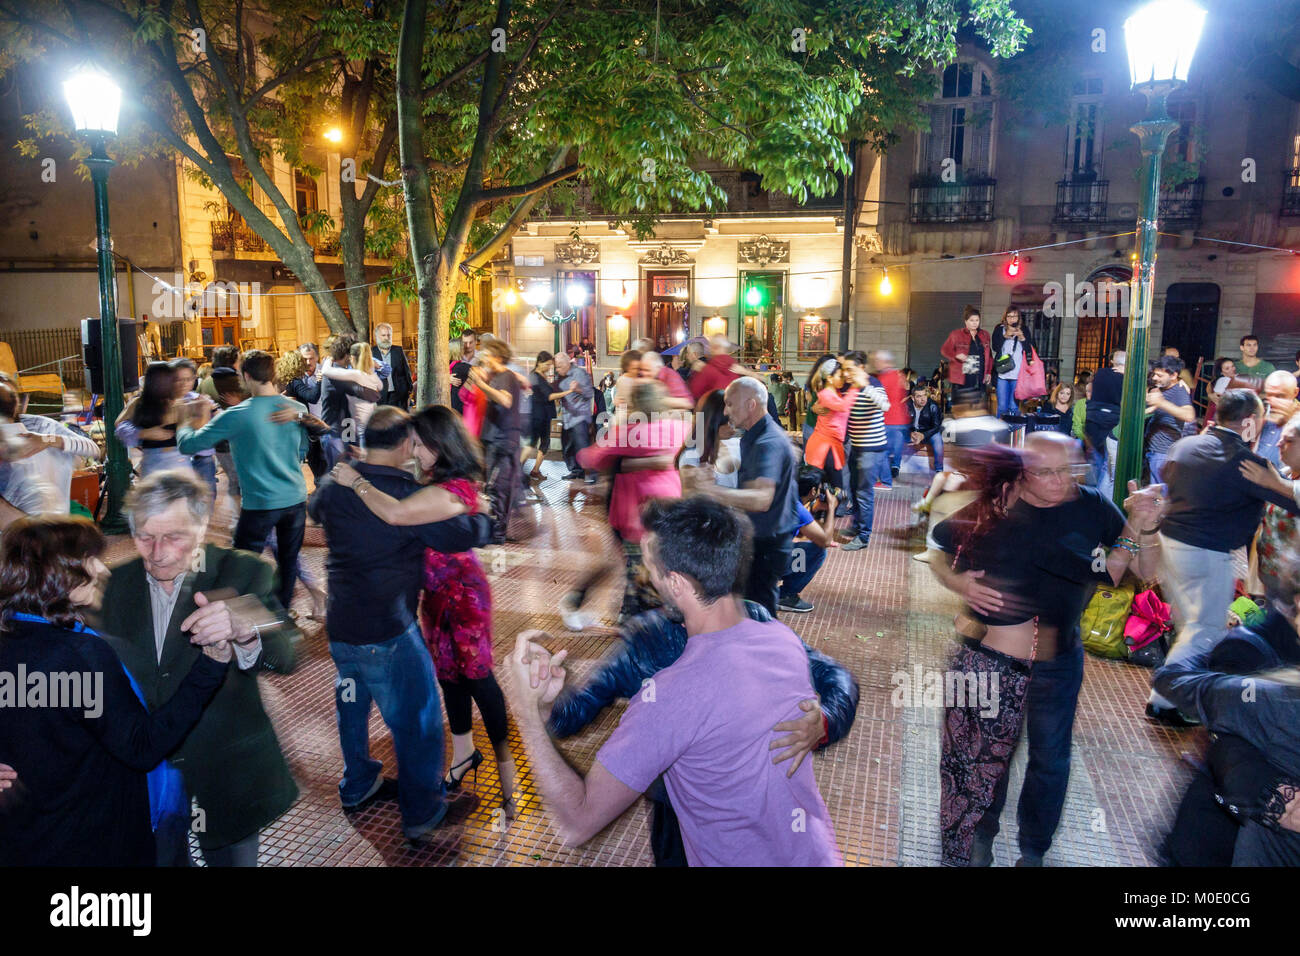 Buenos Aires Argentinien, San Telmo, Plaza Dorrego, Nachtabend, Tango-Tänzer, Tanz, Männer, Männer, Frauen, Paare, Publikum, Performing, hispanisch Stockfoto